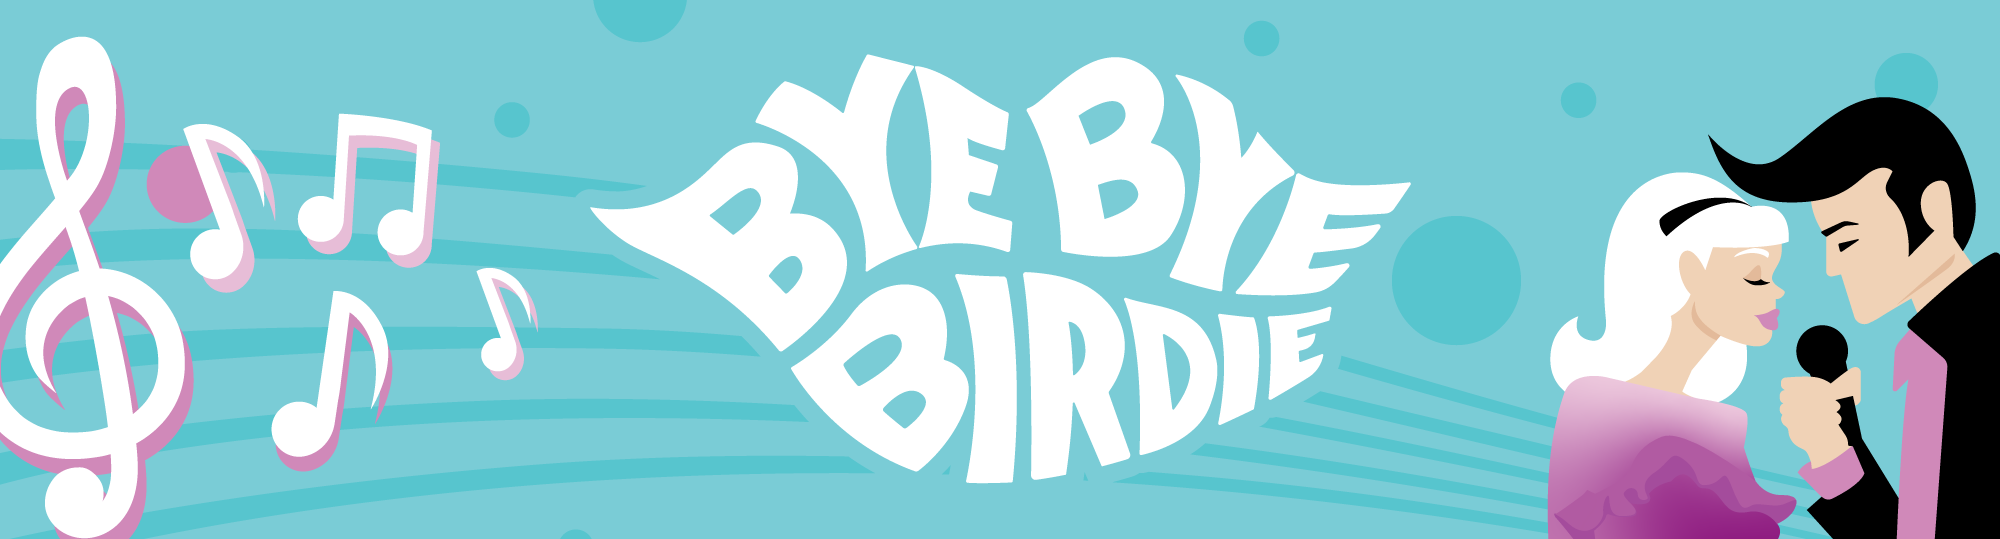 Bye Bye Birdie banner image